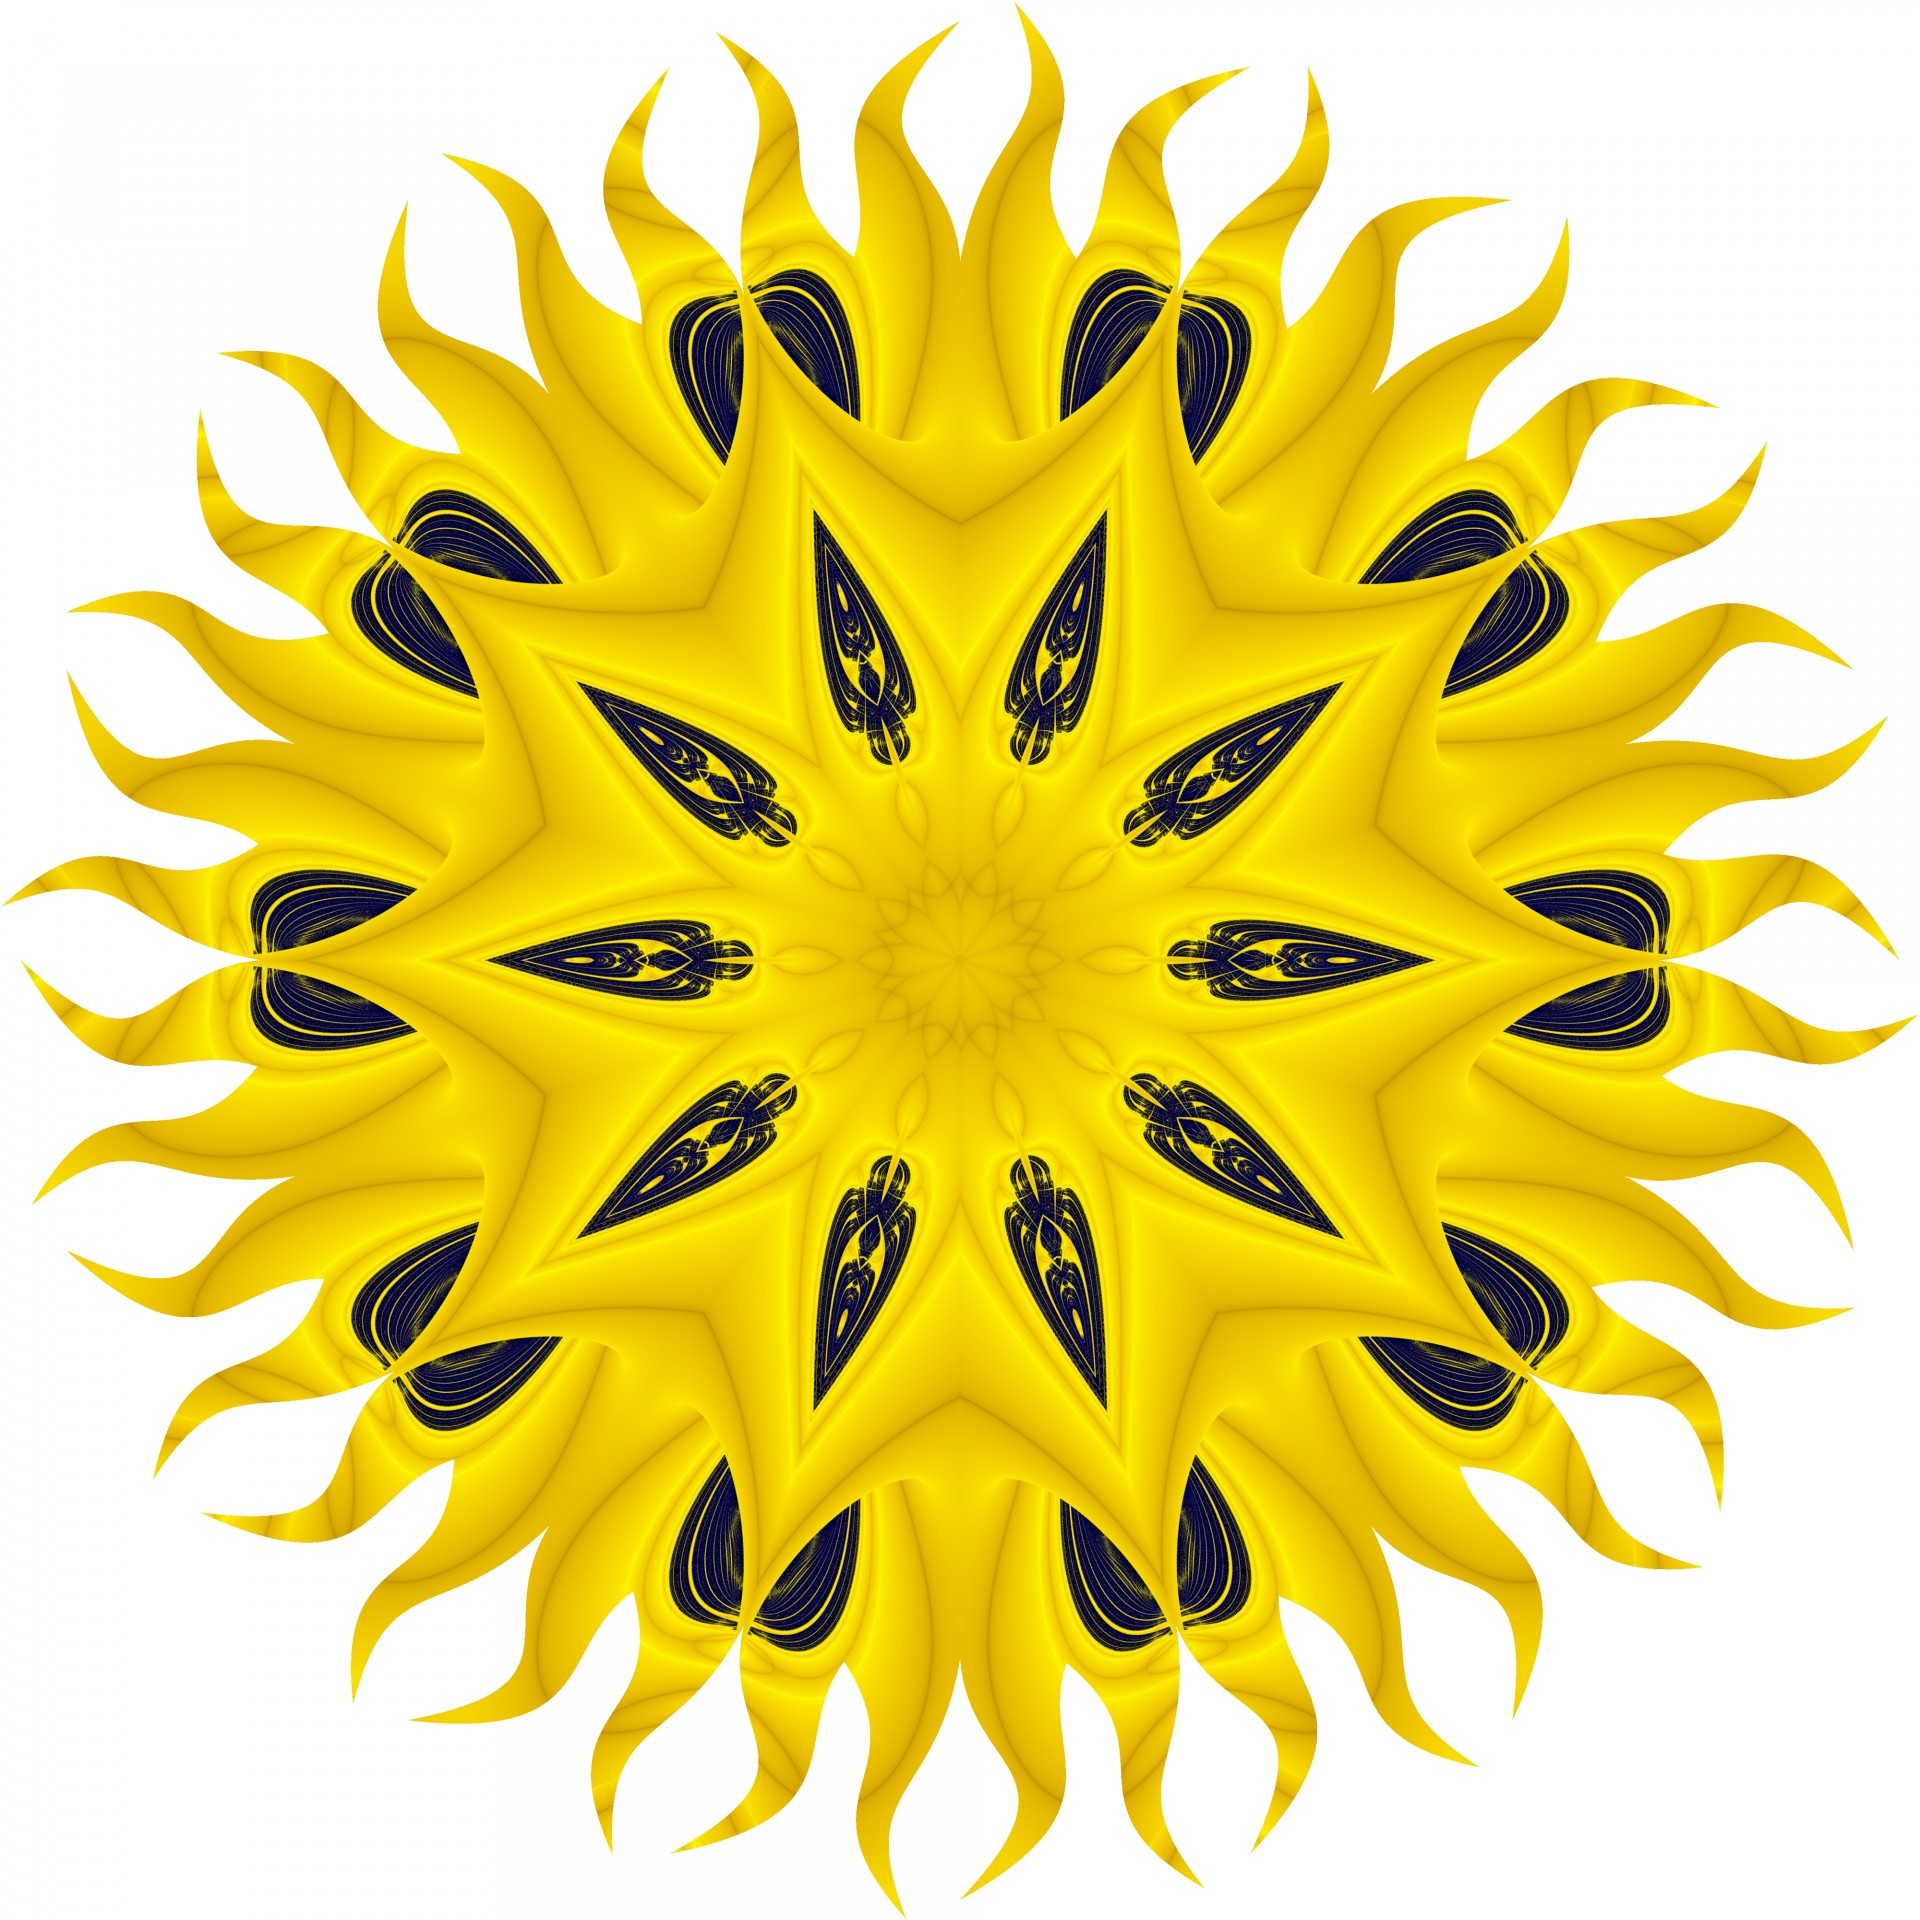 Dark Seed Sunflower